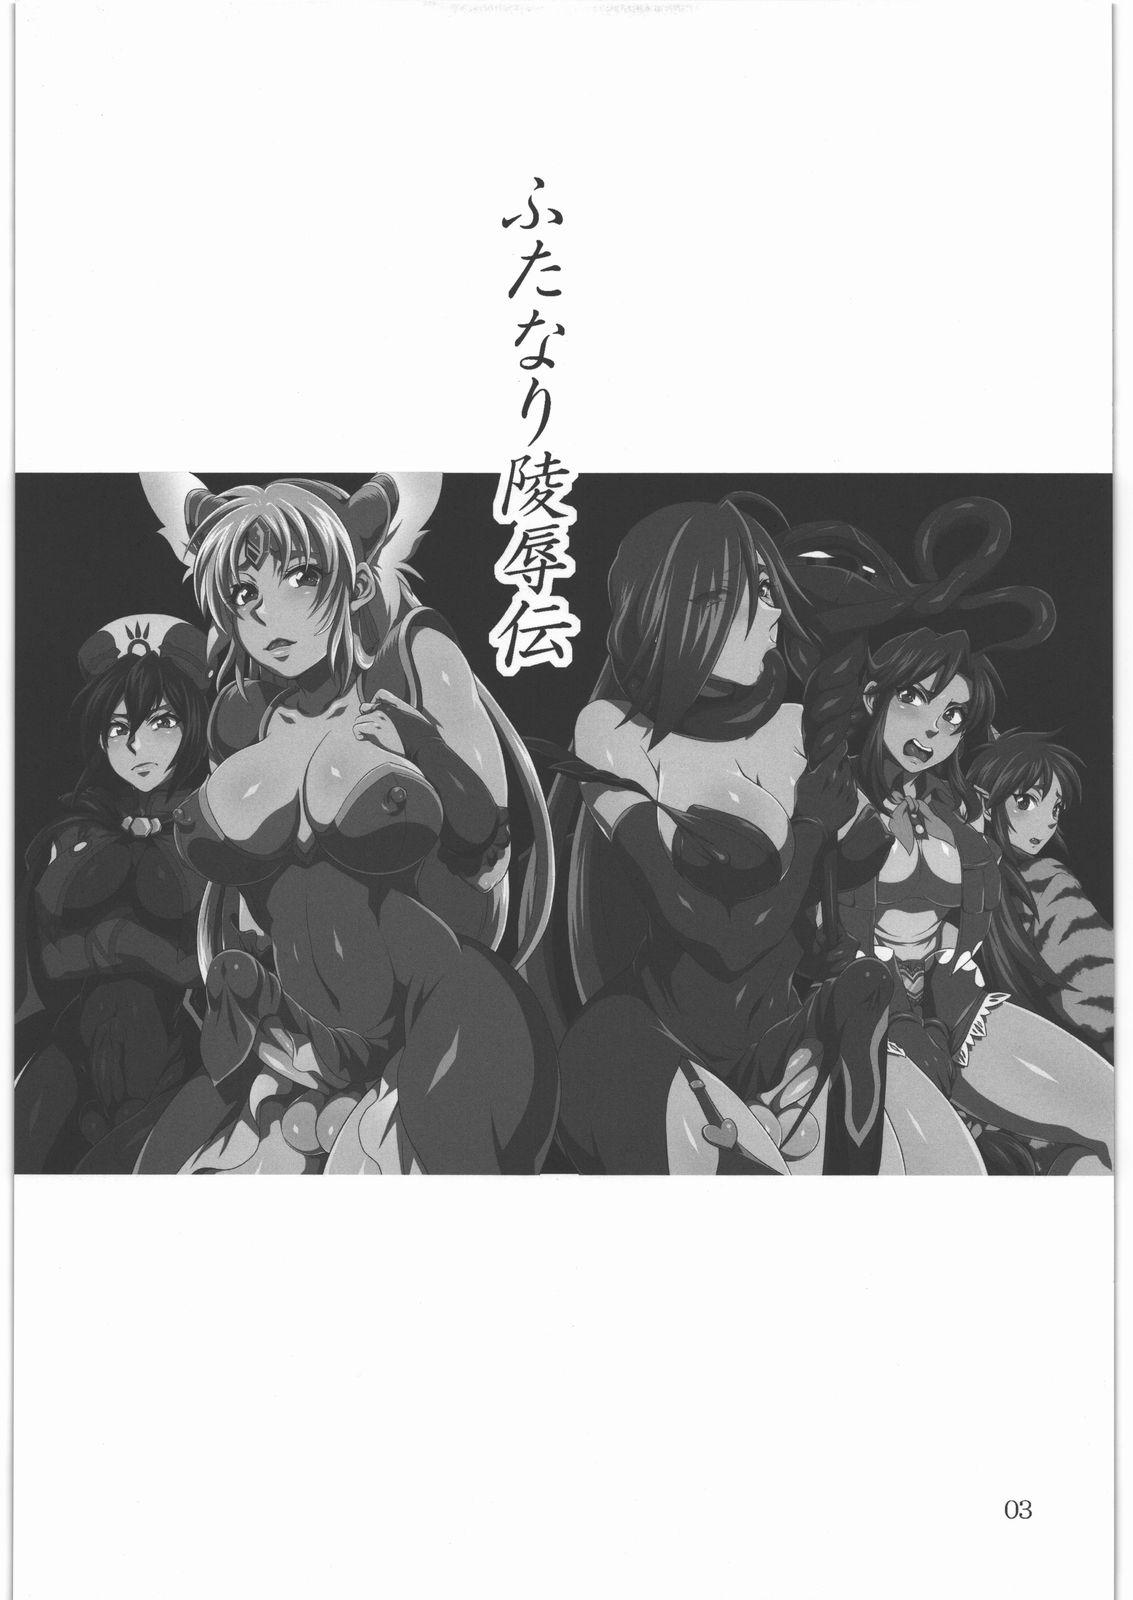 No Condom Futanari Ryoujoku den - Queens blade Seiken densetsu 3 Tales of legendia Bigdick - Page 2